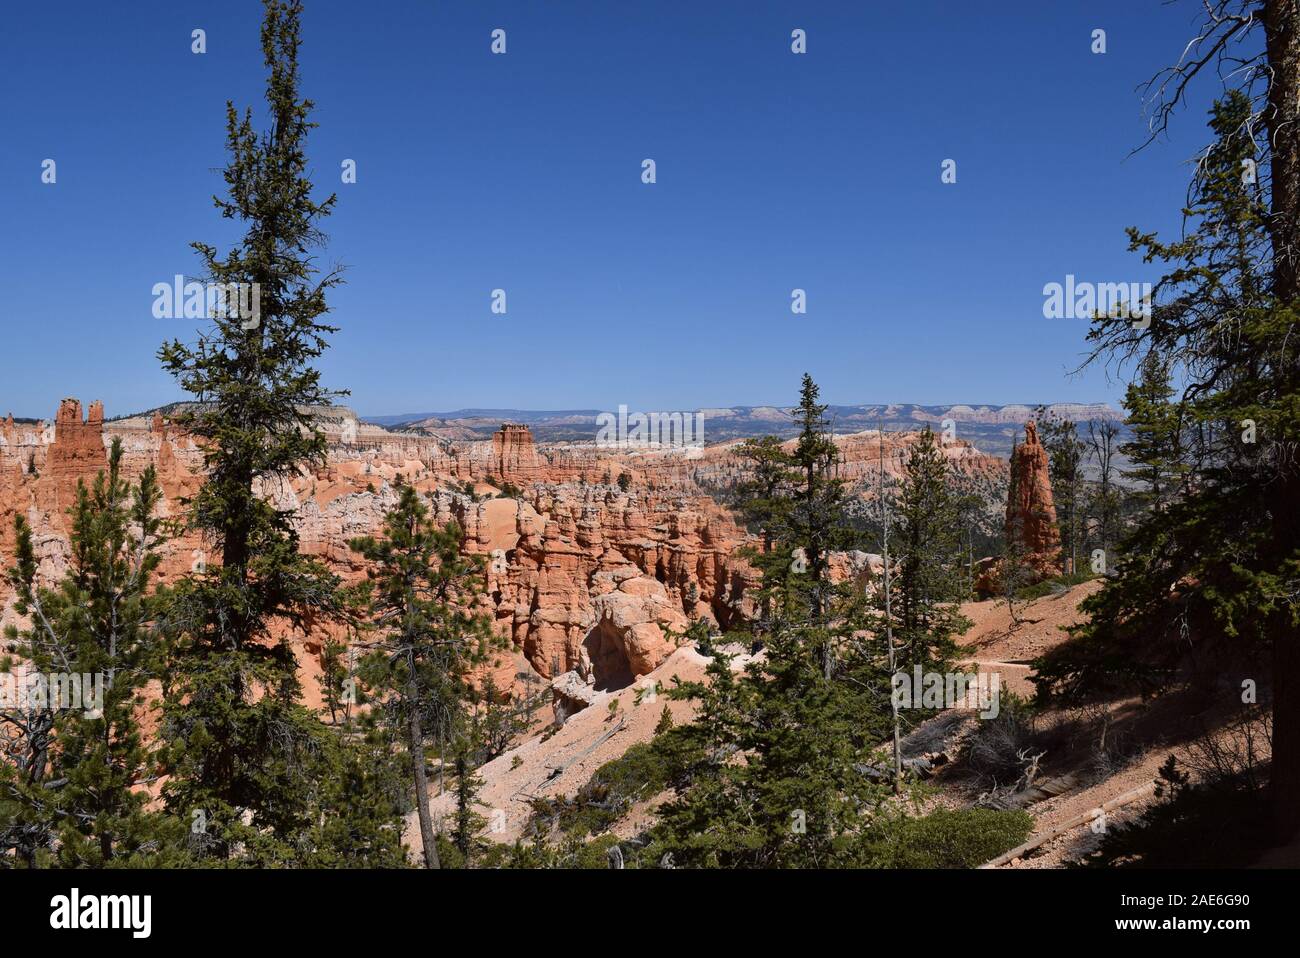 Einige der vielen Hoodoos im Bryce Canyon, durch Millionen Jahre der geologische Aktivität auf dem Colorado Plateau gebildet. Stockfoto